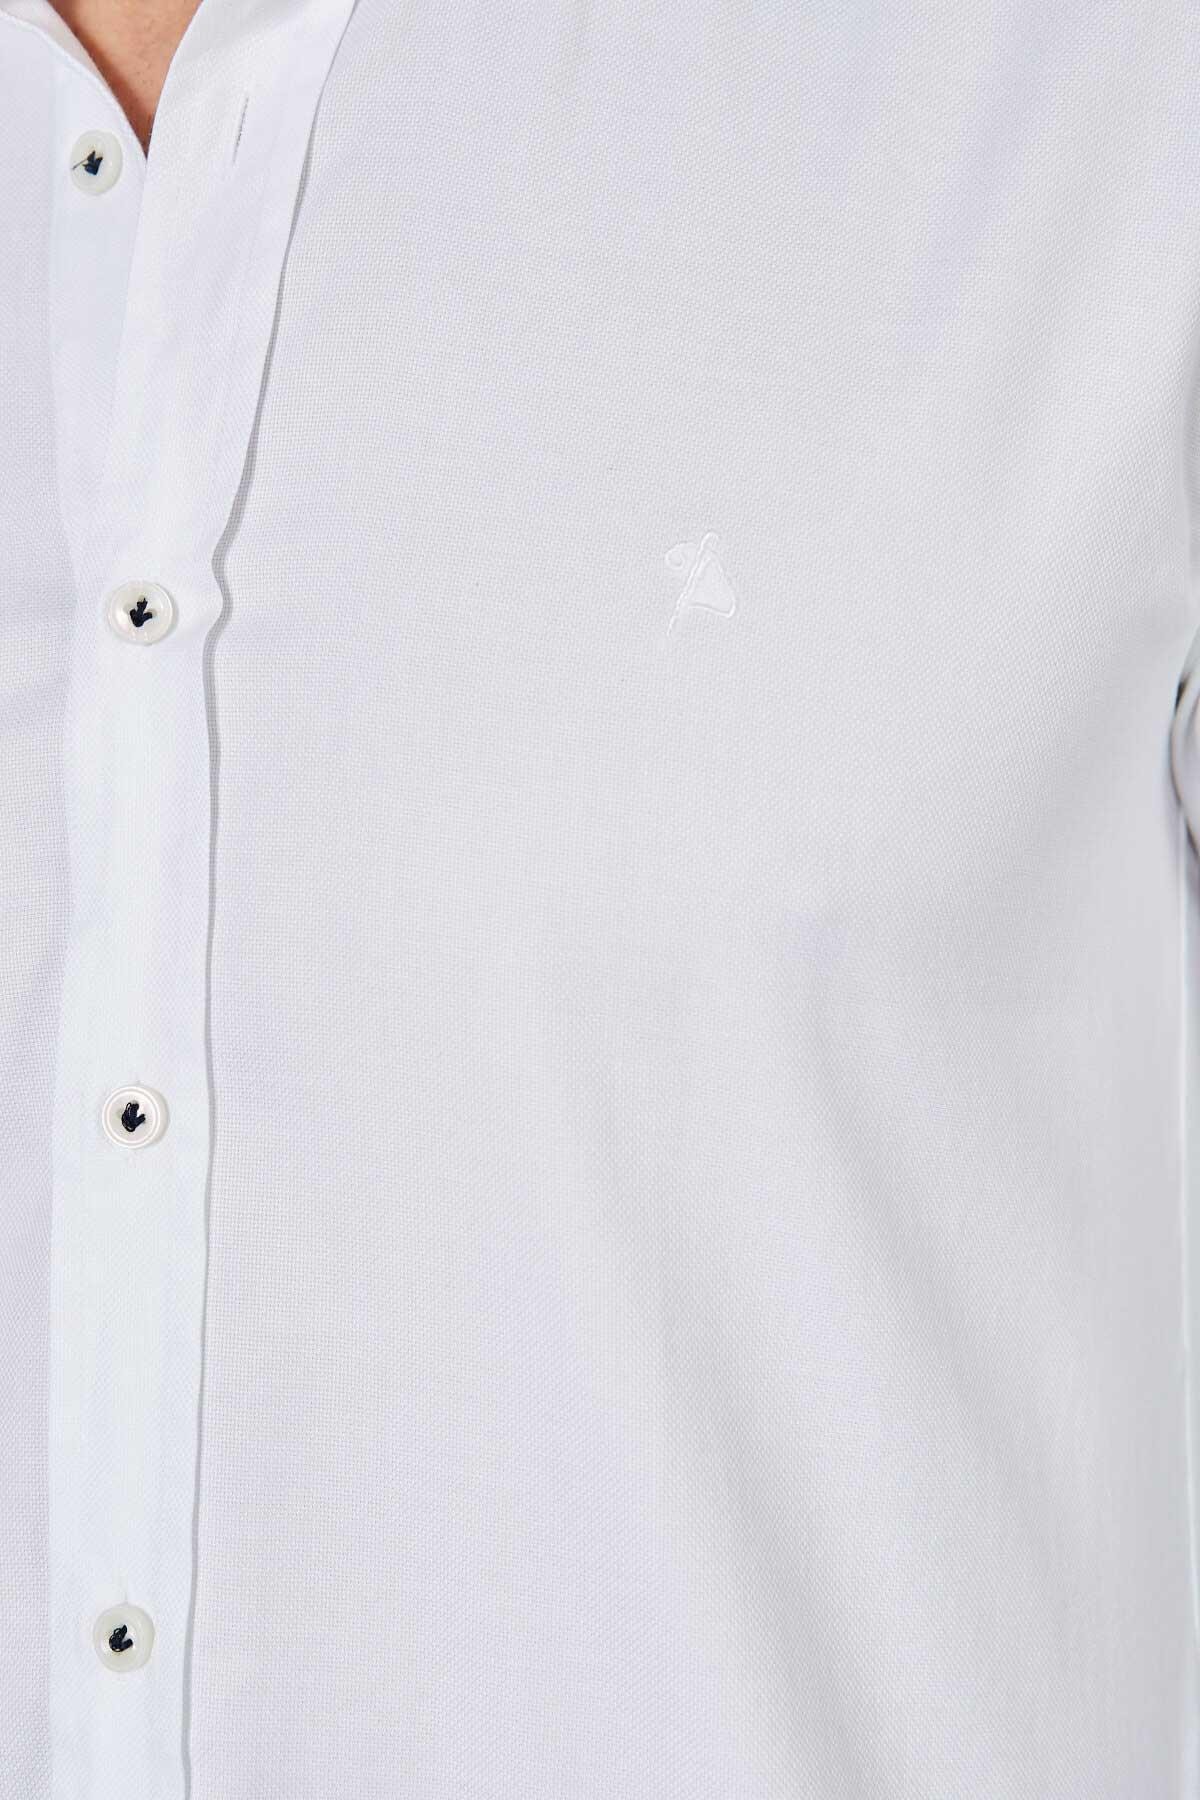 Kolu Patchli Slim Fit Gömlek - Beyaz-Lacivert